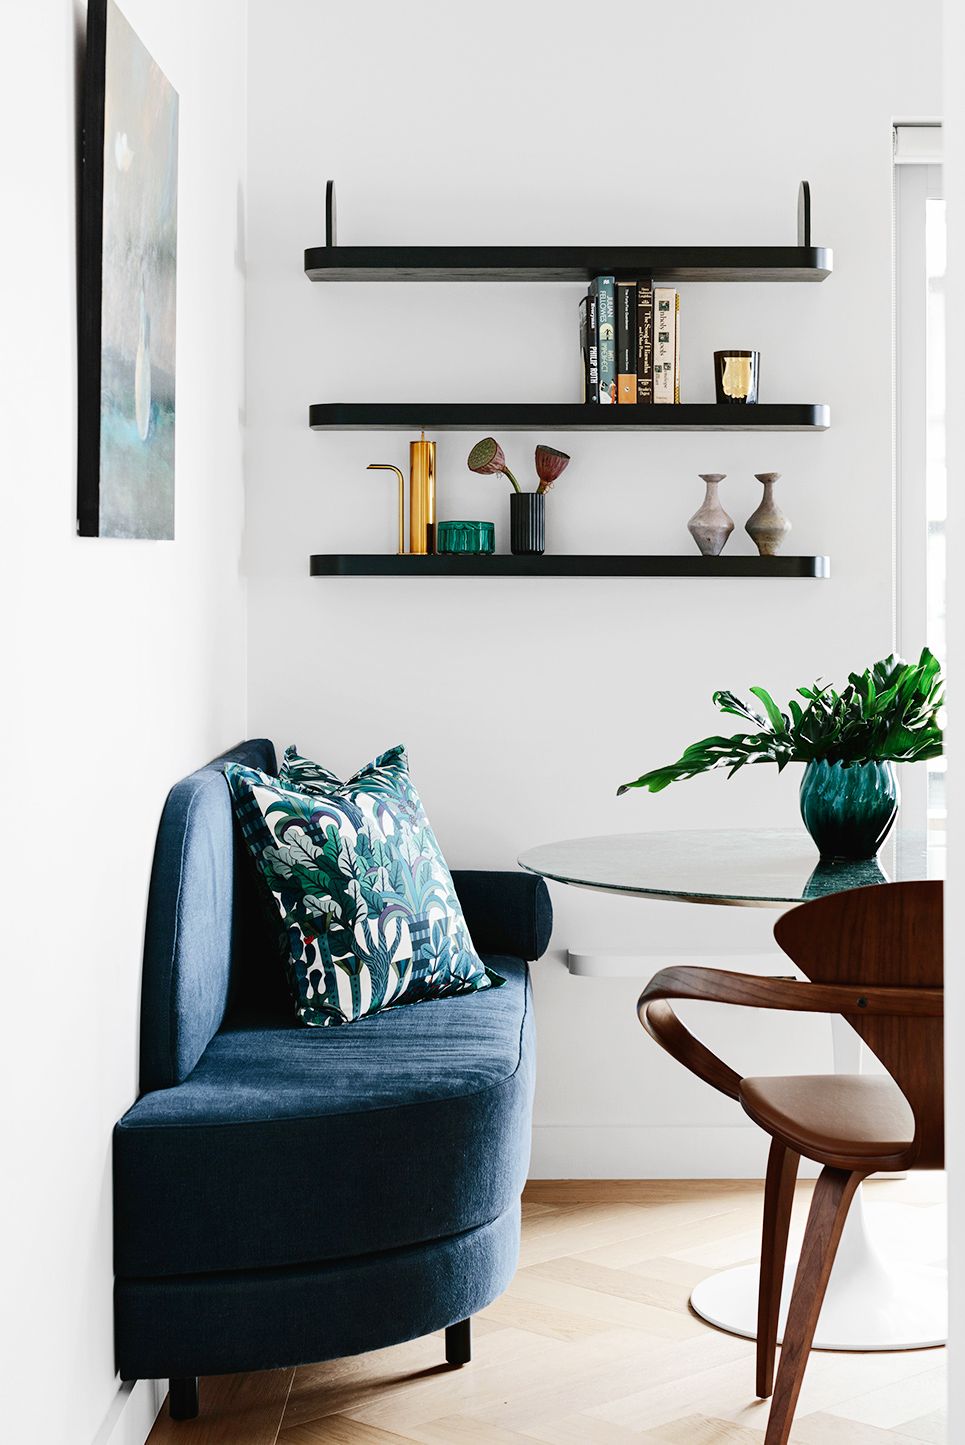 hình ảnh phòng ăn nhỏ đẹp với bàn tròn, ghế sofa bọc vải màu xanh dương, kệ gỗ màu đen nổi bật trên nền tường trắng